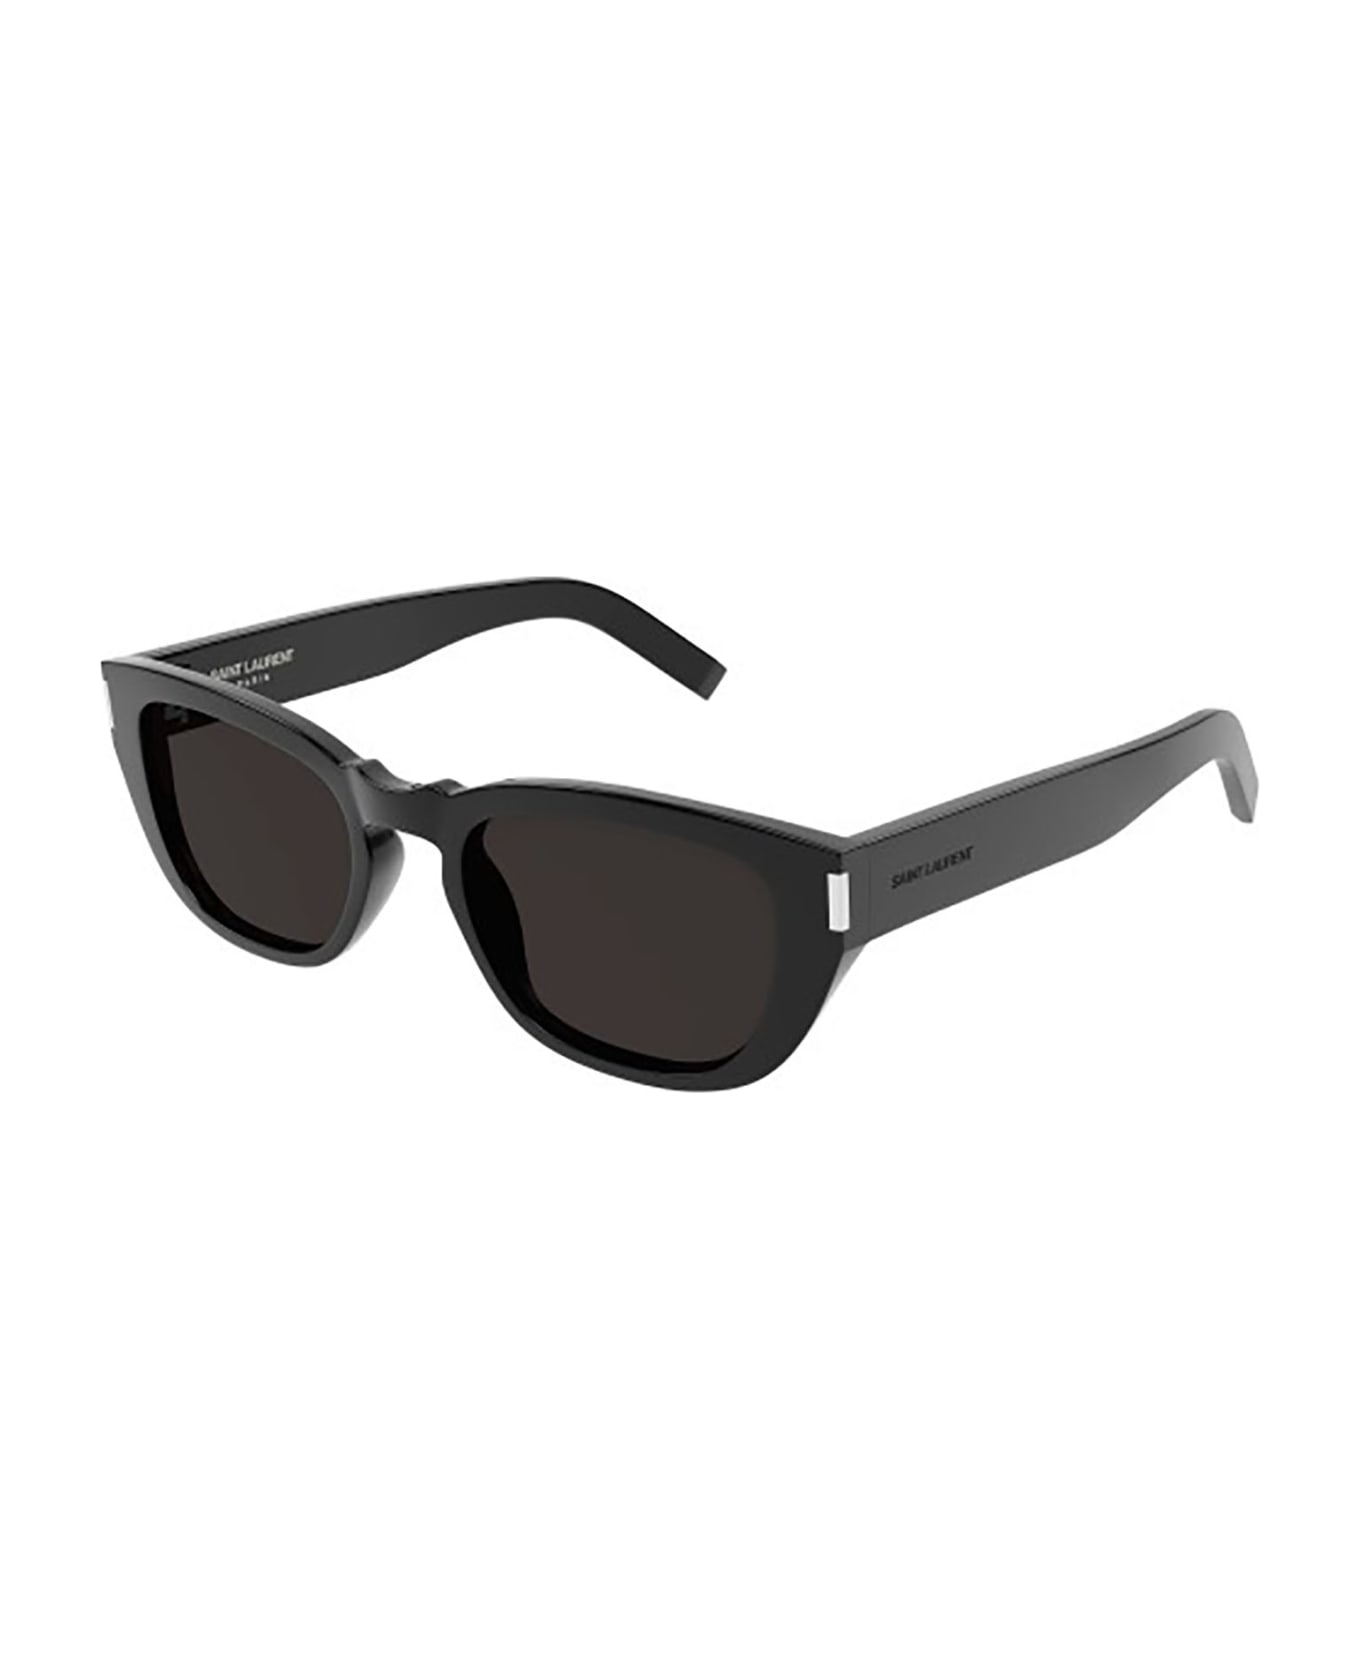 Saint Laurent Eyewear SL 601 Sunglasses - Black Black Black サングラス